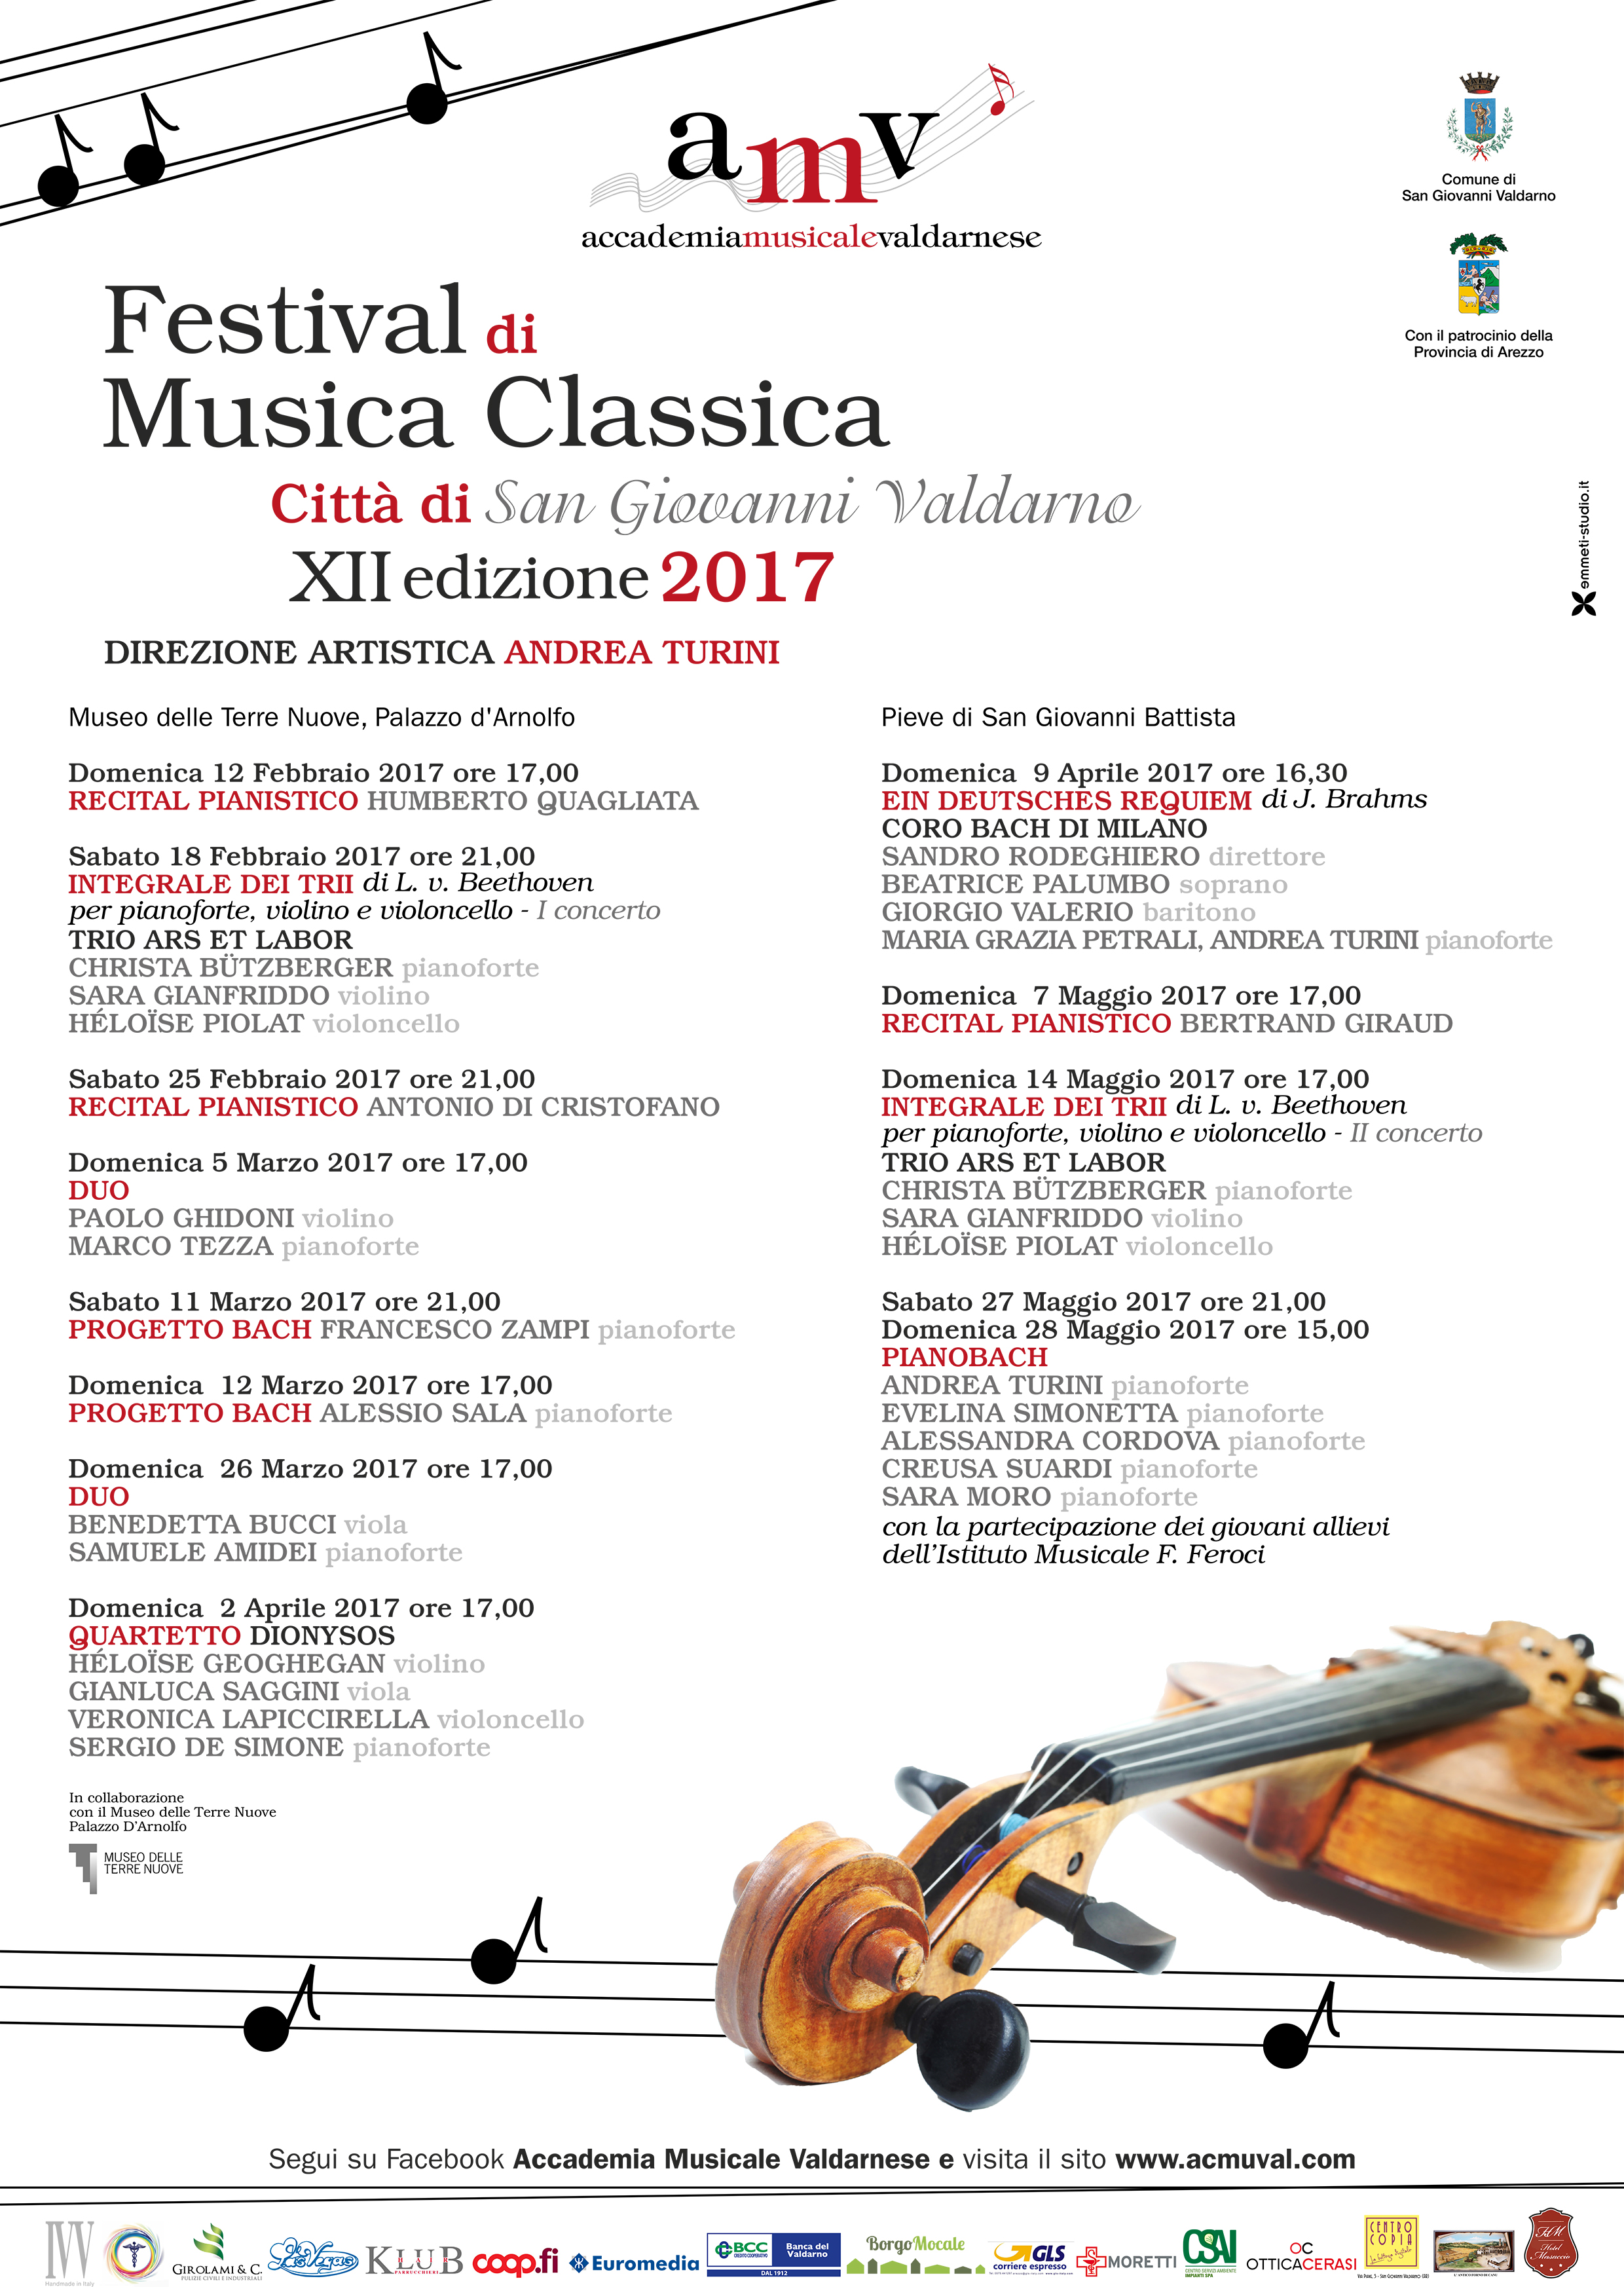 Festival di Musica Classica “Città di San Giovanni Valdarno” – XII edizione